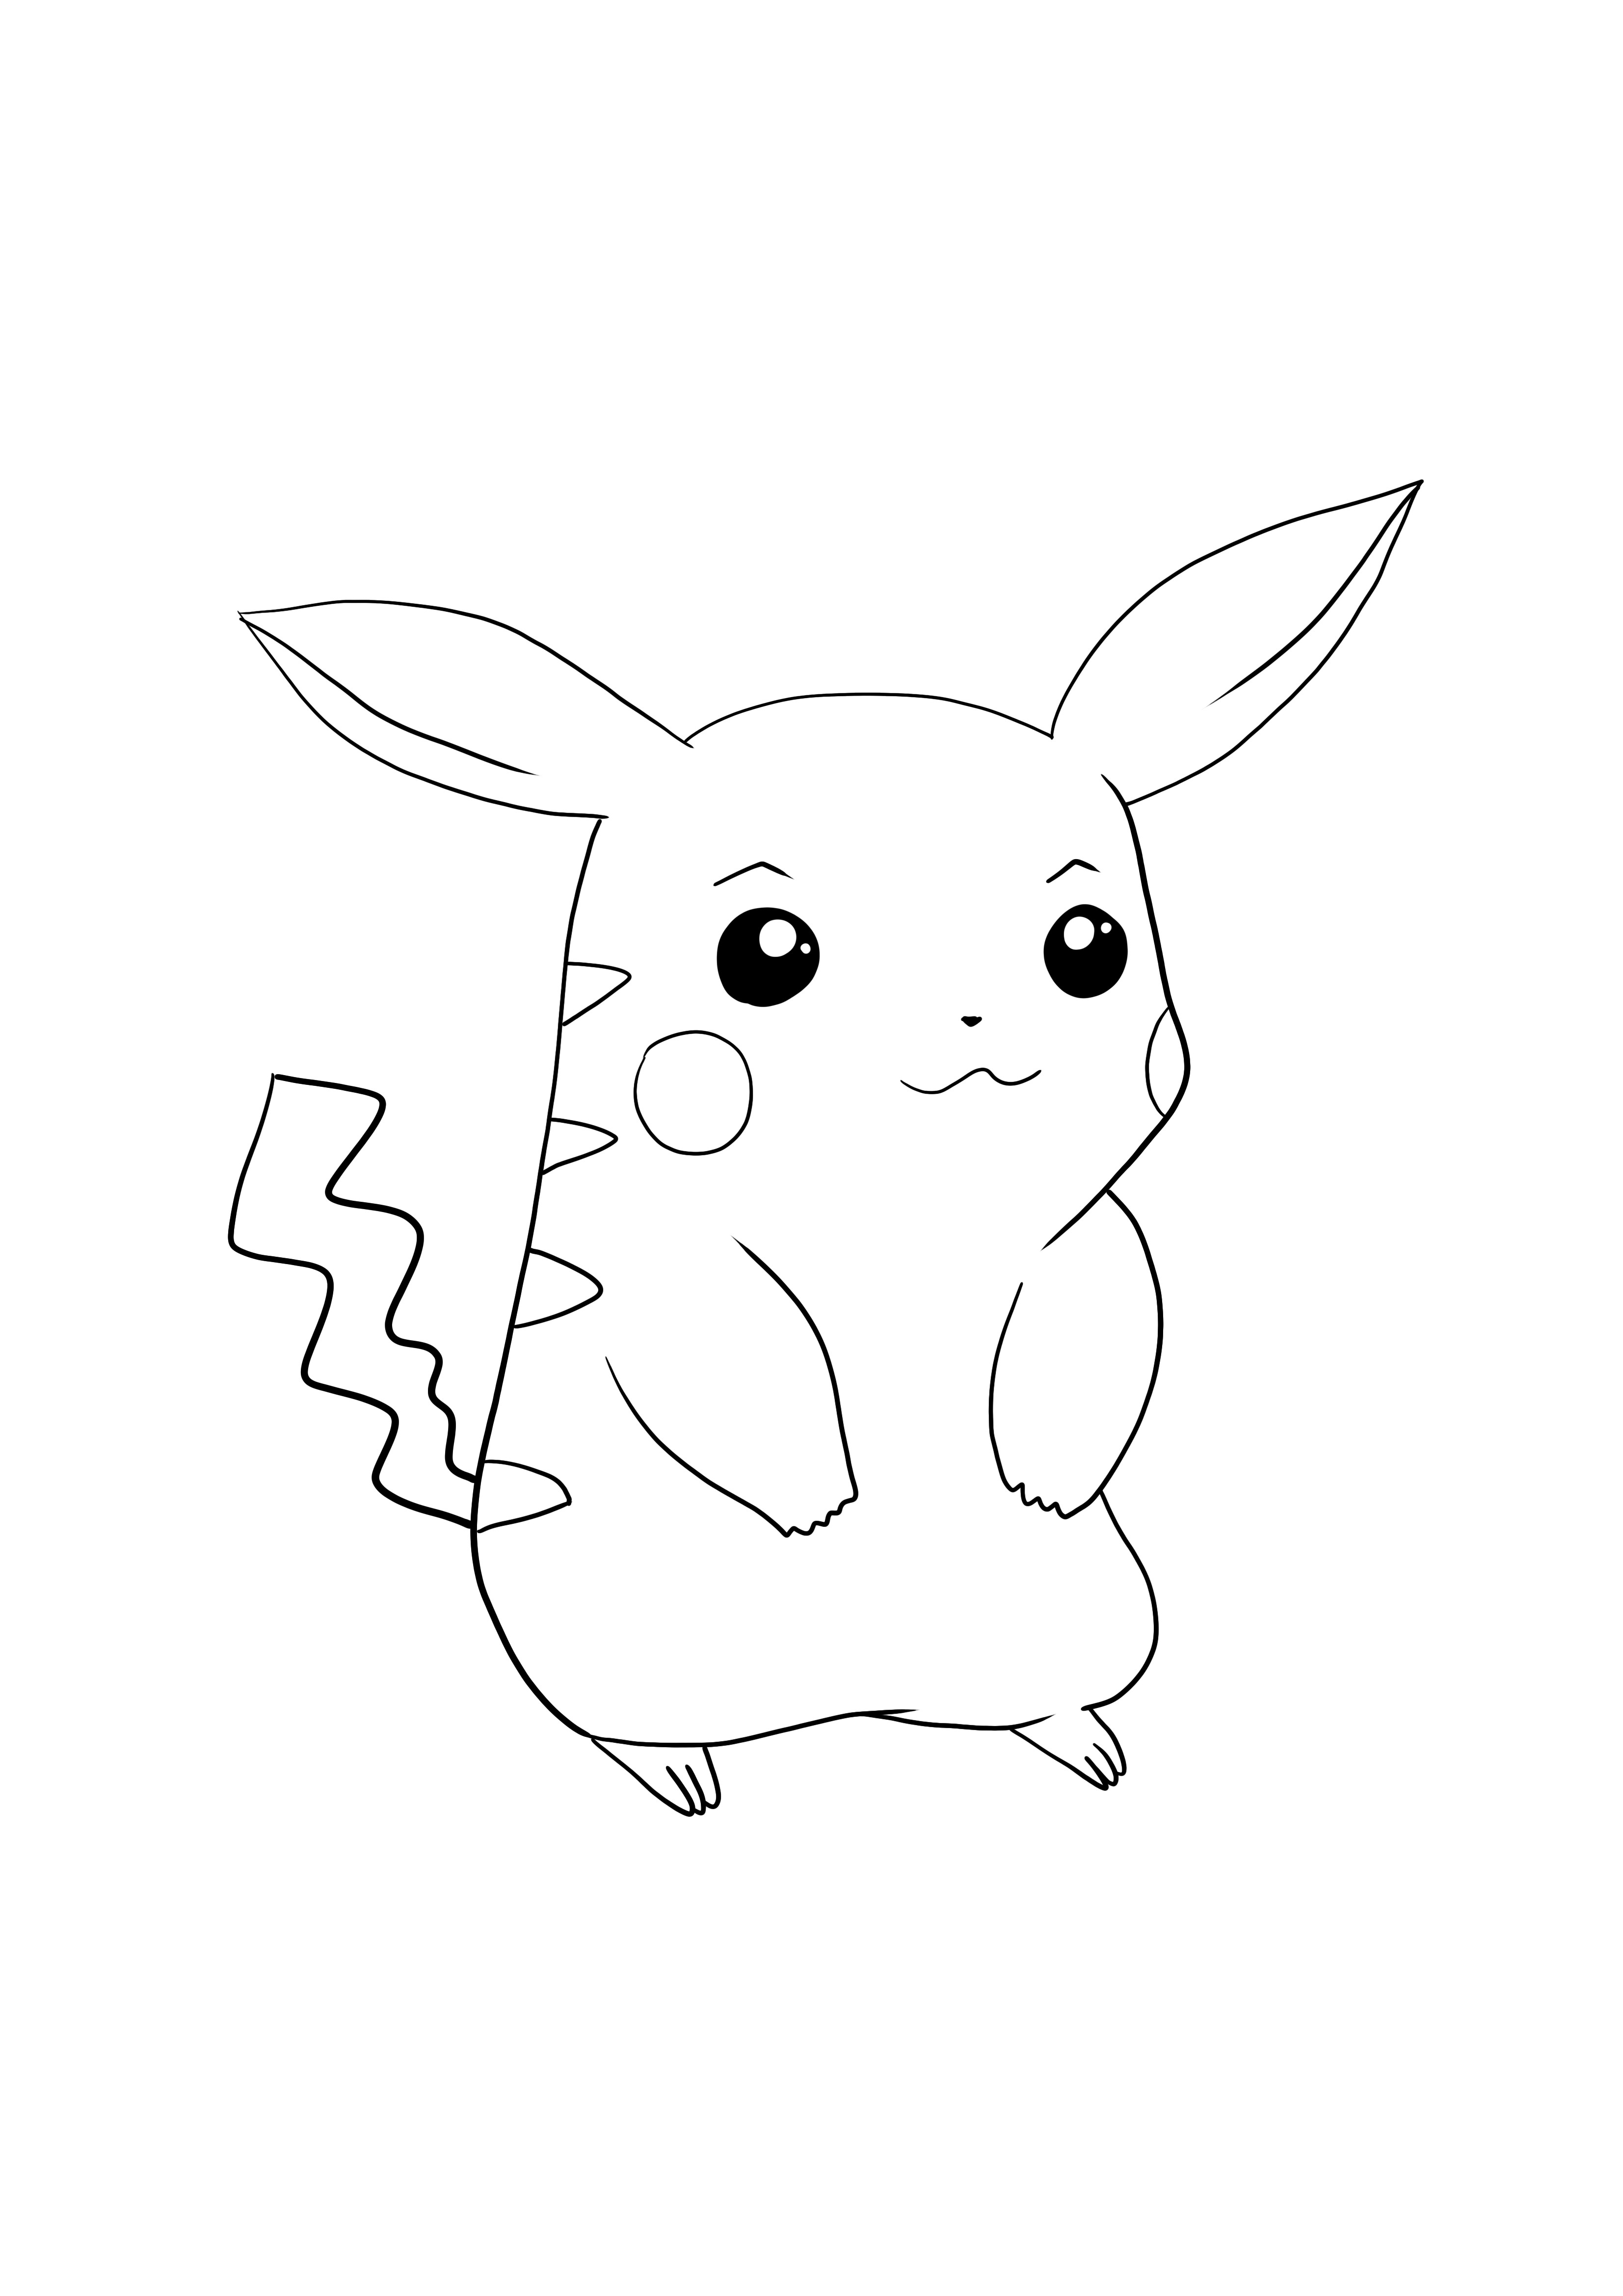 Pikachu-Pokémon go descarga y colorea la página gratis